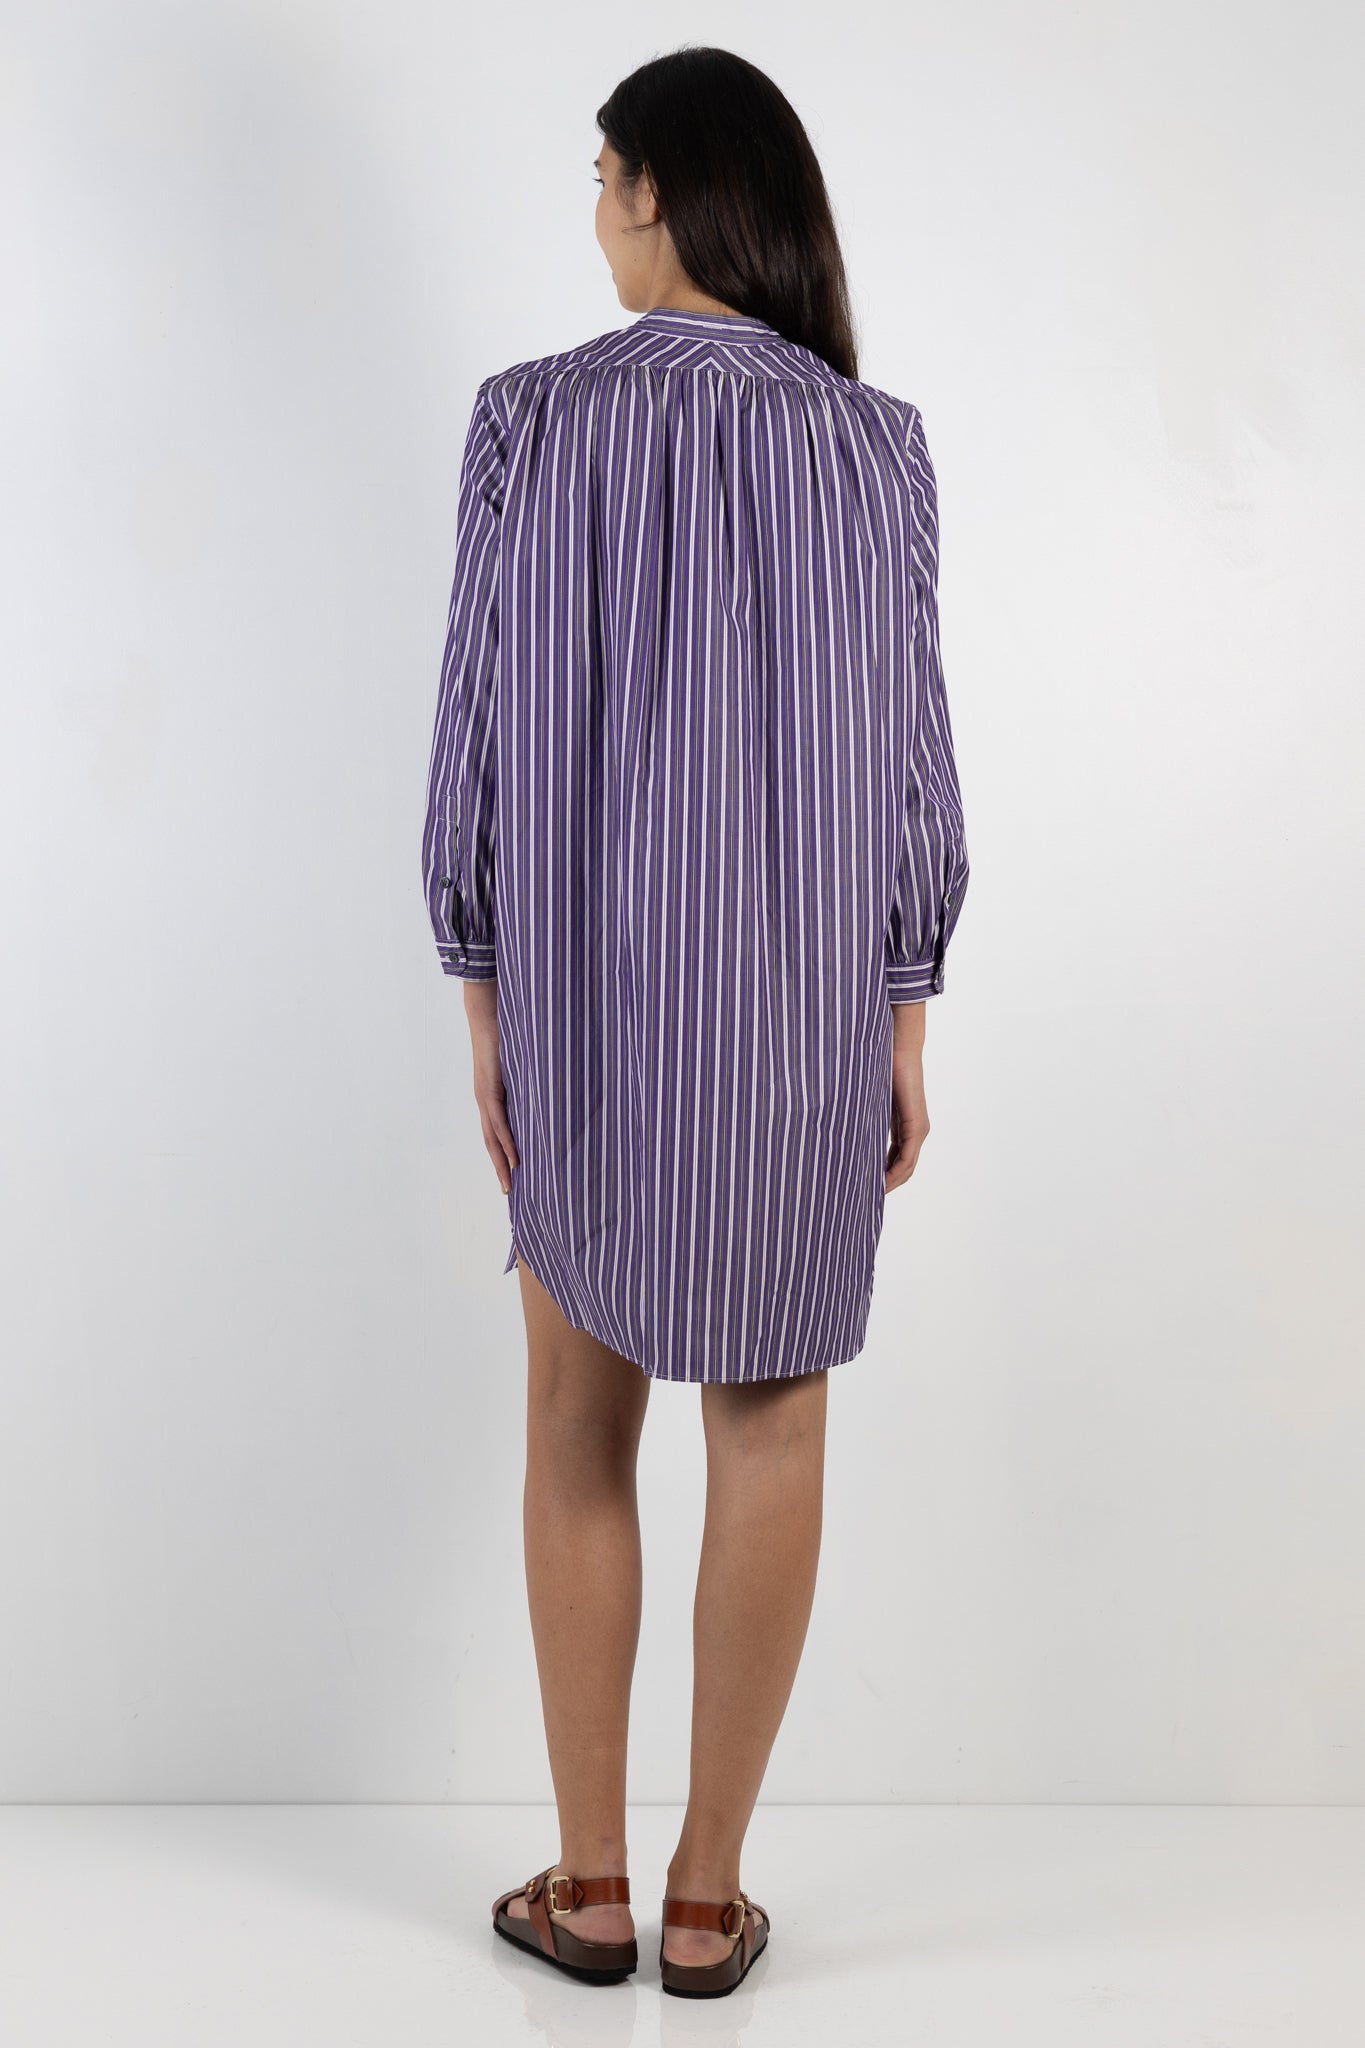 wopmens dress | Soeur Francine dress | The Standard Store